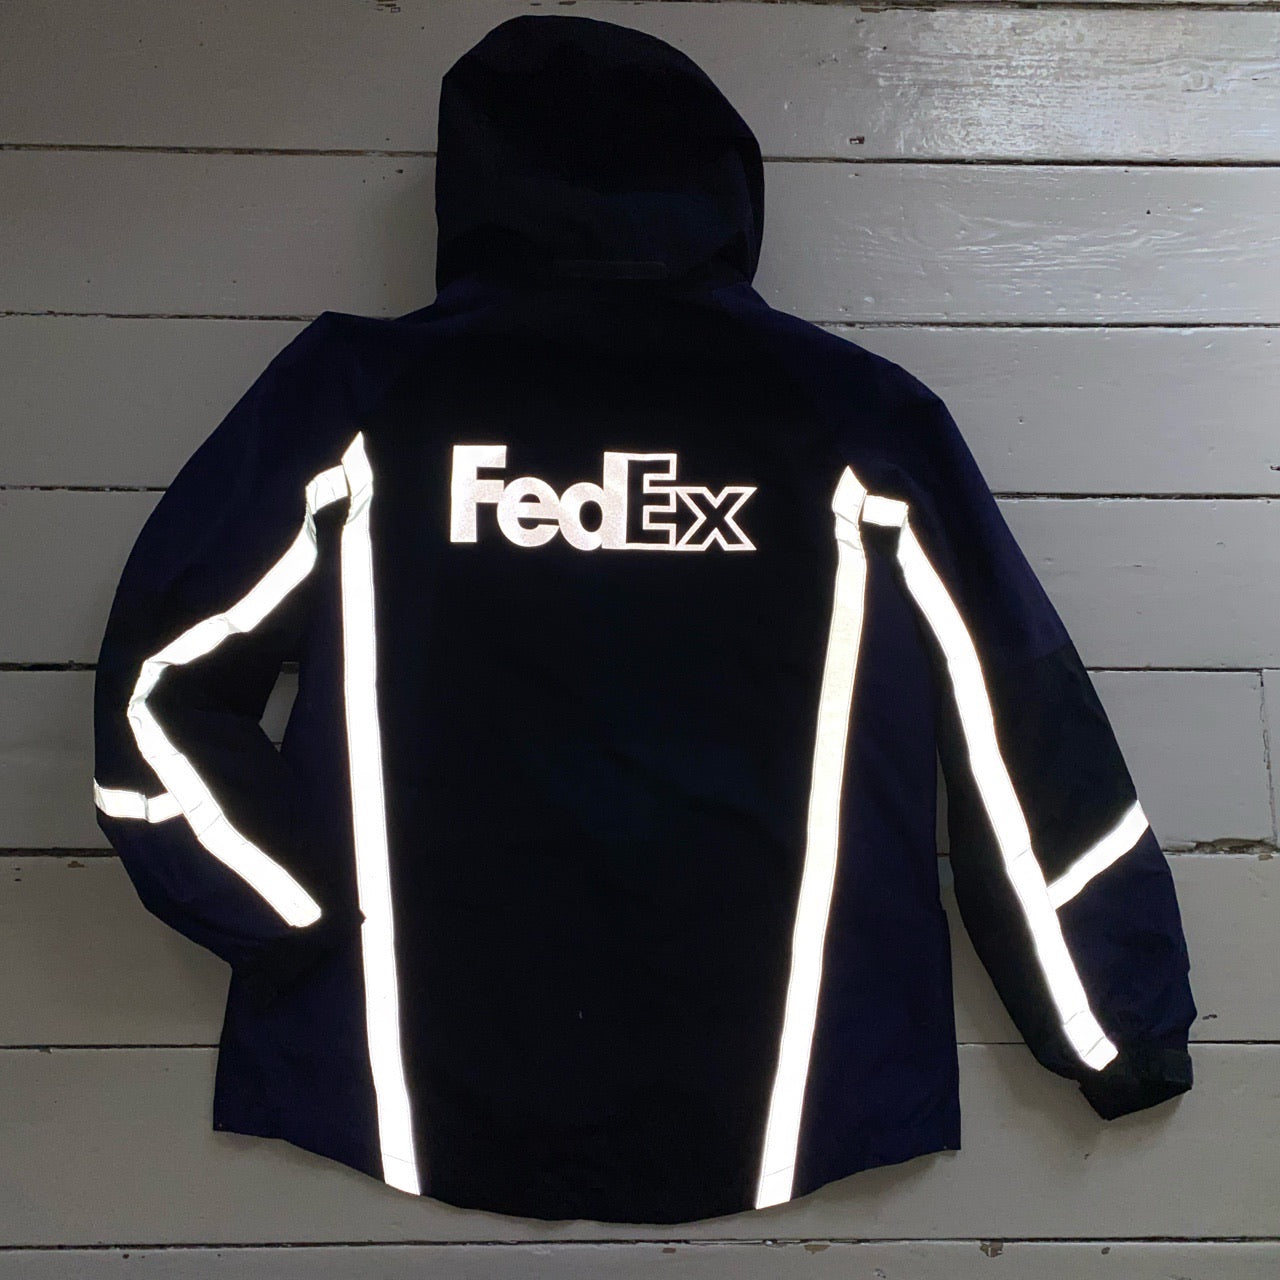 Fedex Windbreaker Reflective Jacket (Large)